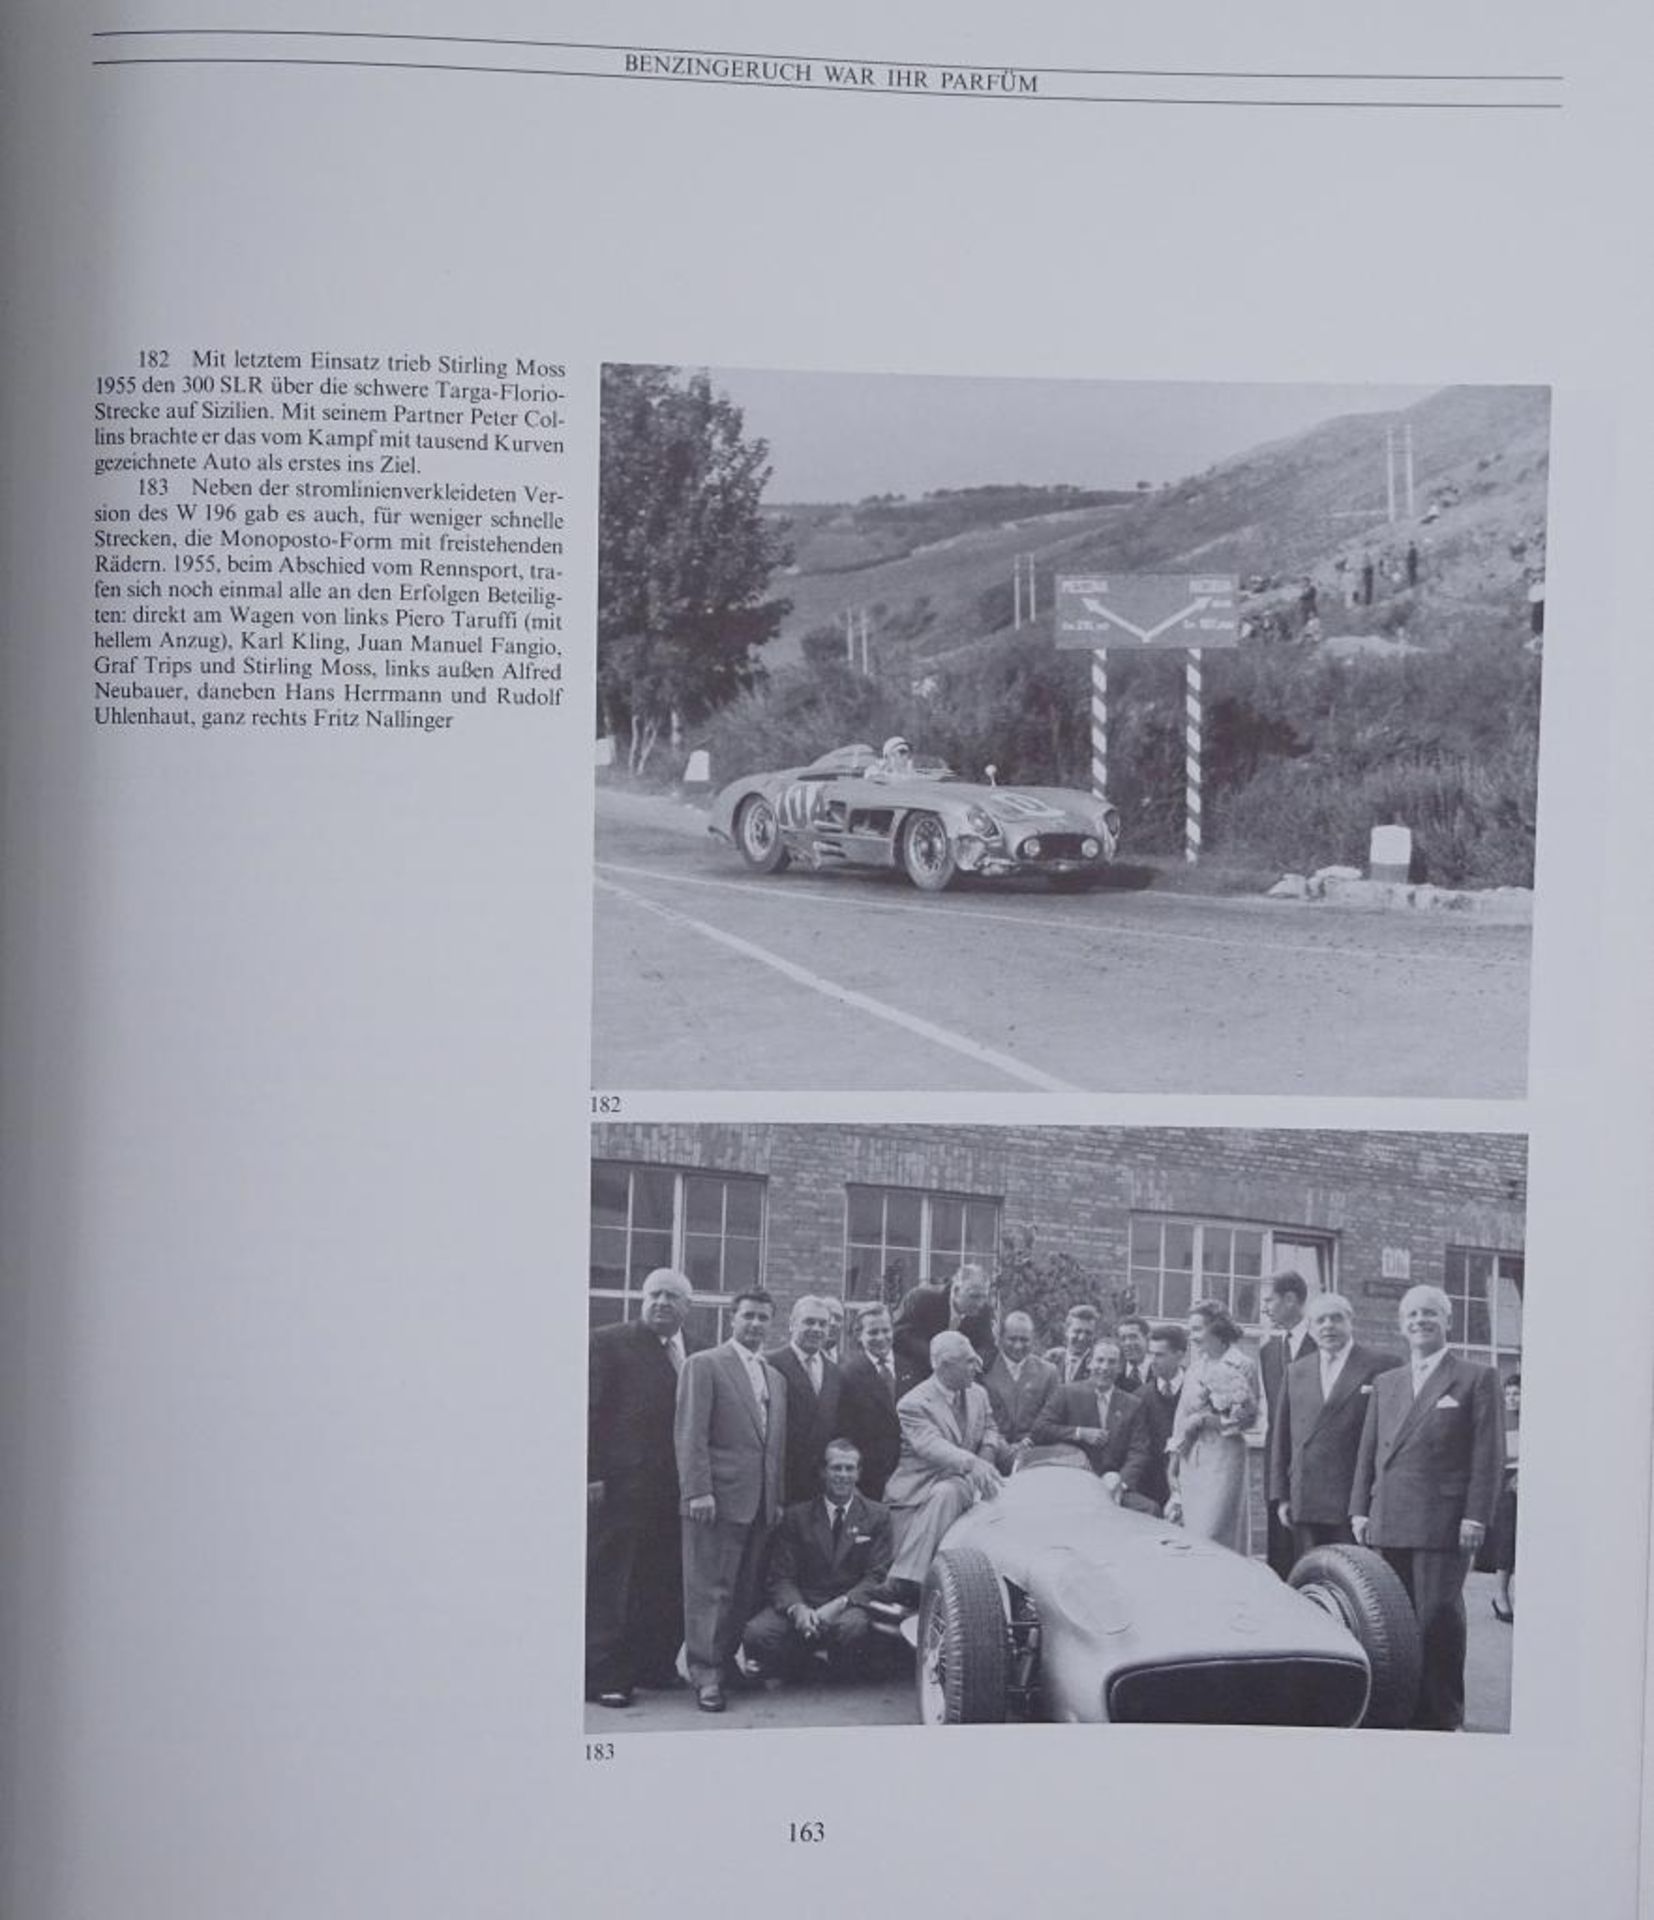 100 Jahre Daimler-Bezn, Zwei Bände, "Die Technik und das Unternehmen", 1986,im Schube - Bild 4 aus 10